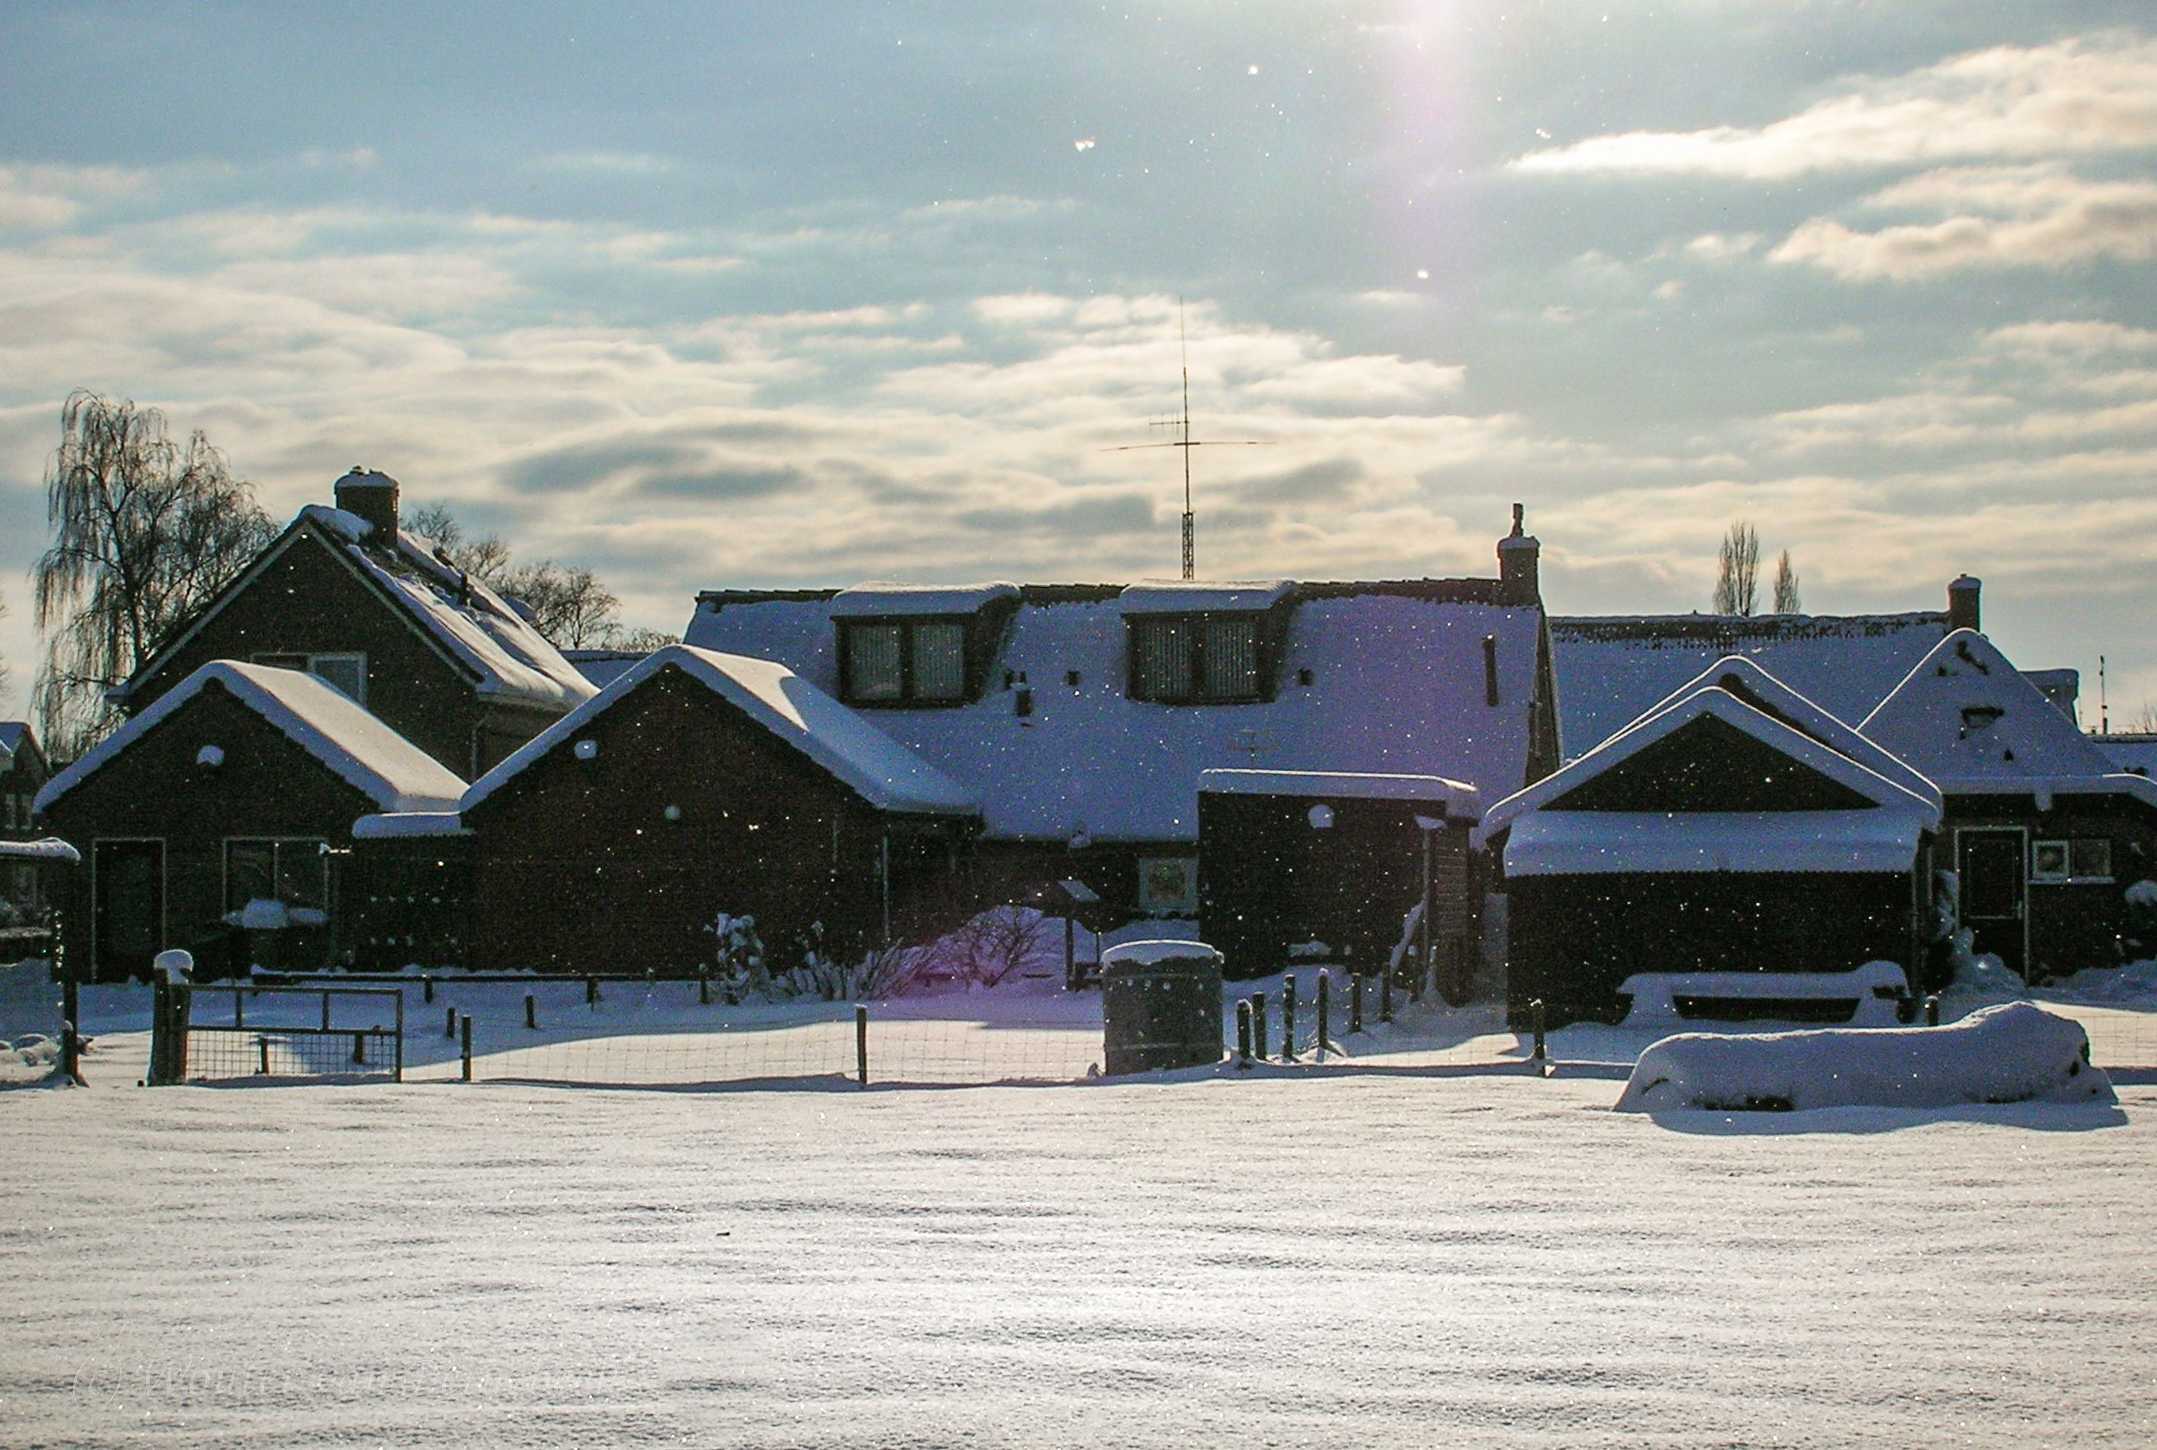 Sneeuwdek, -12 graden en poolsneeuw in december 2009, Ureterp, Friesland. Foto: Wouter van Bernebeek